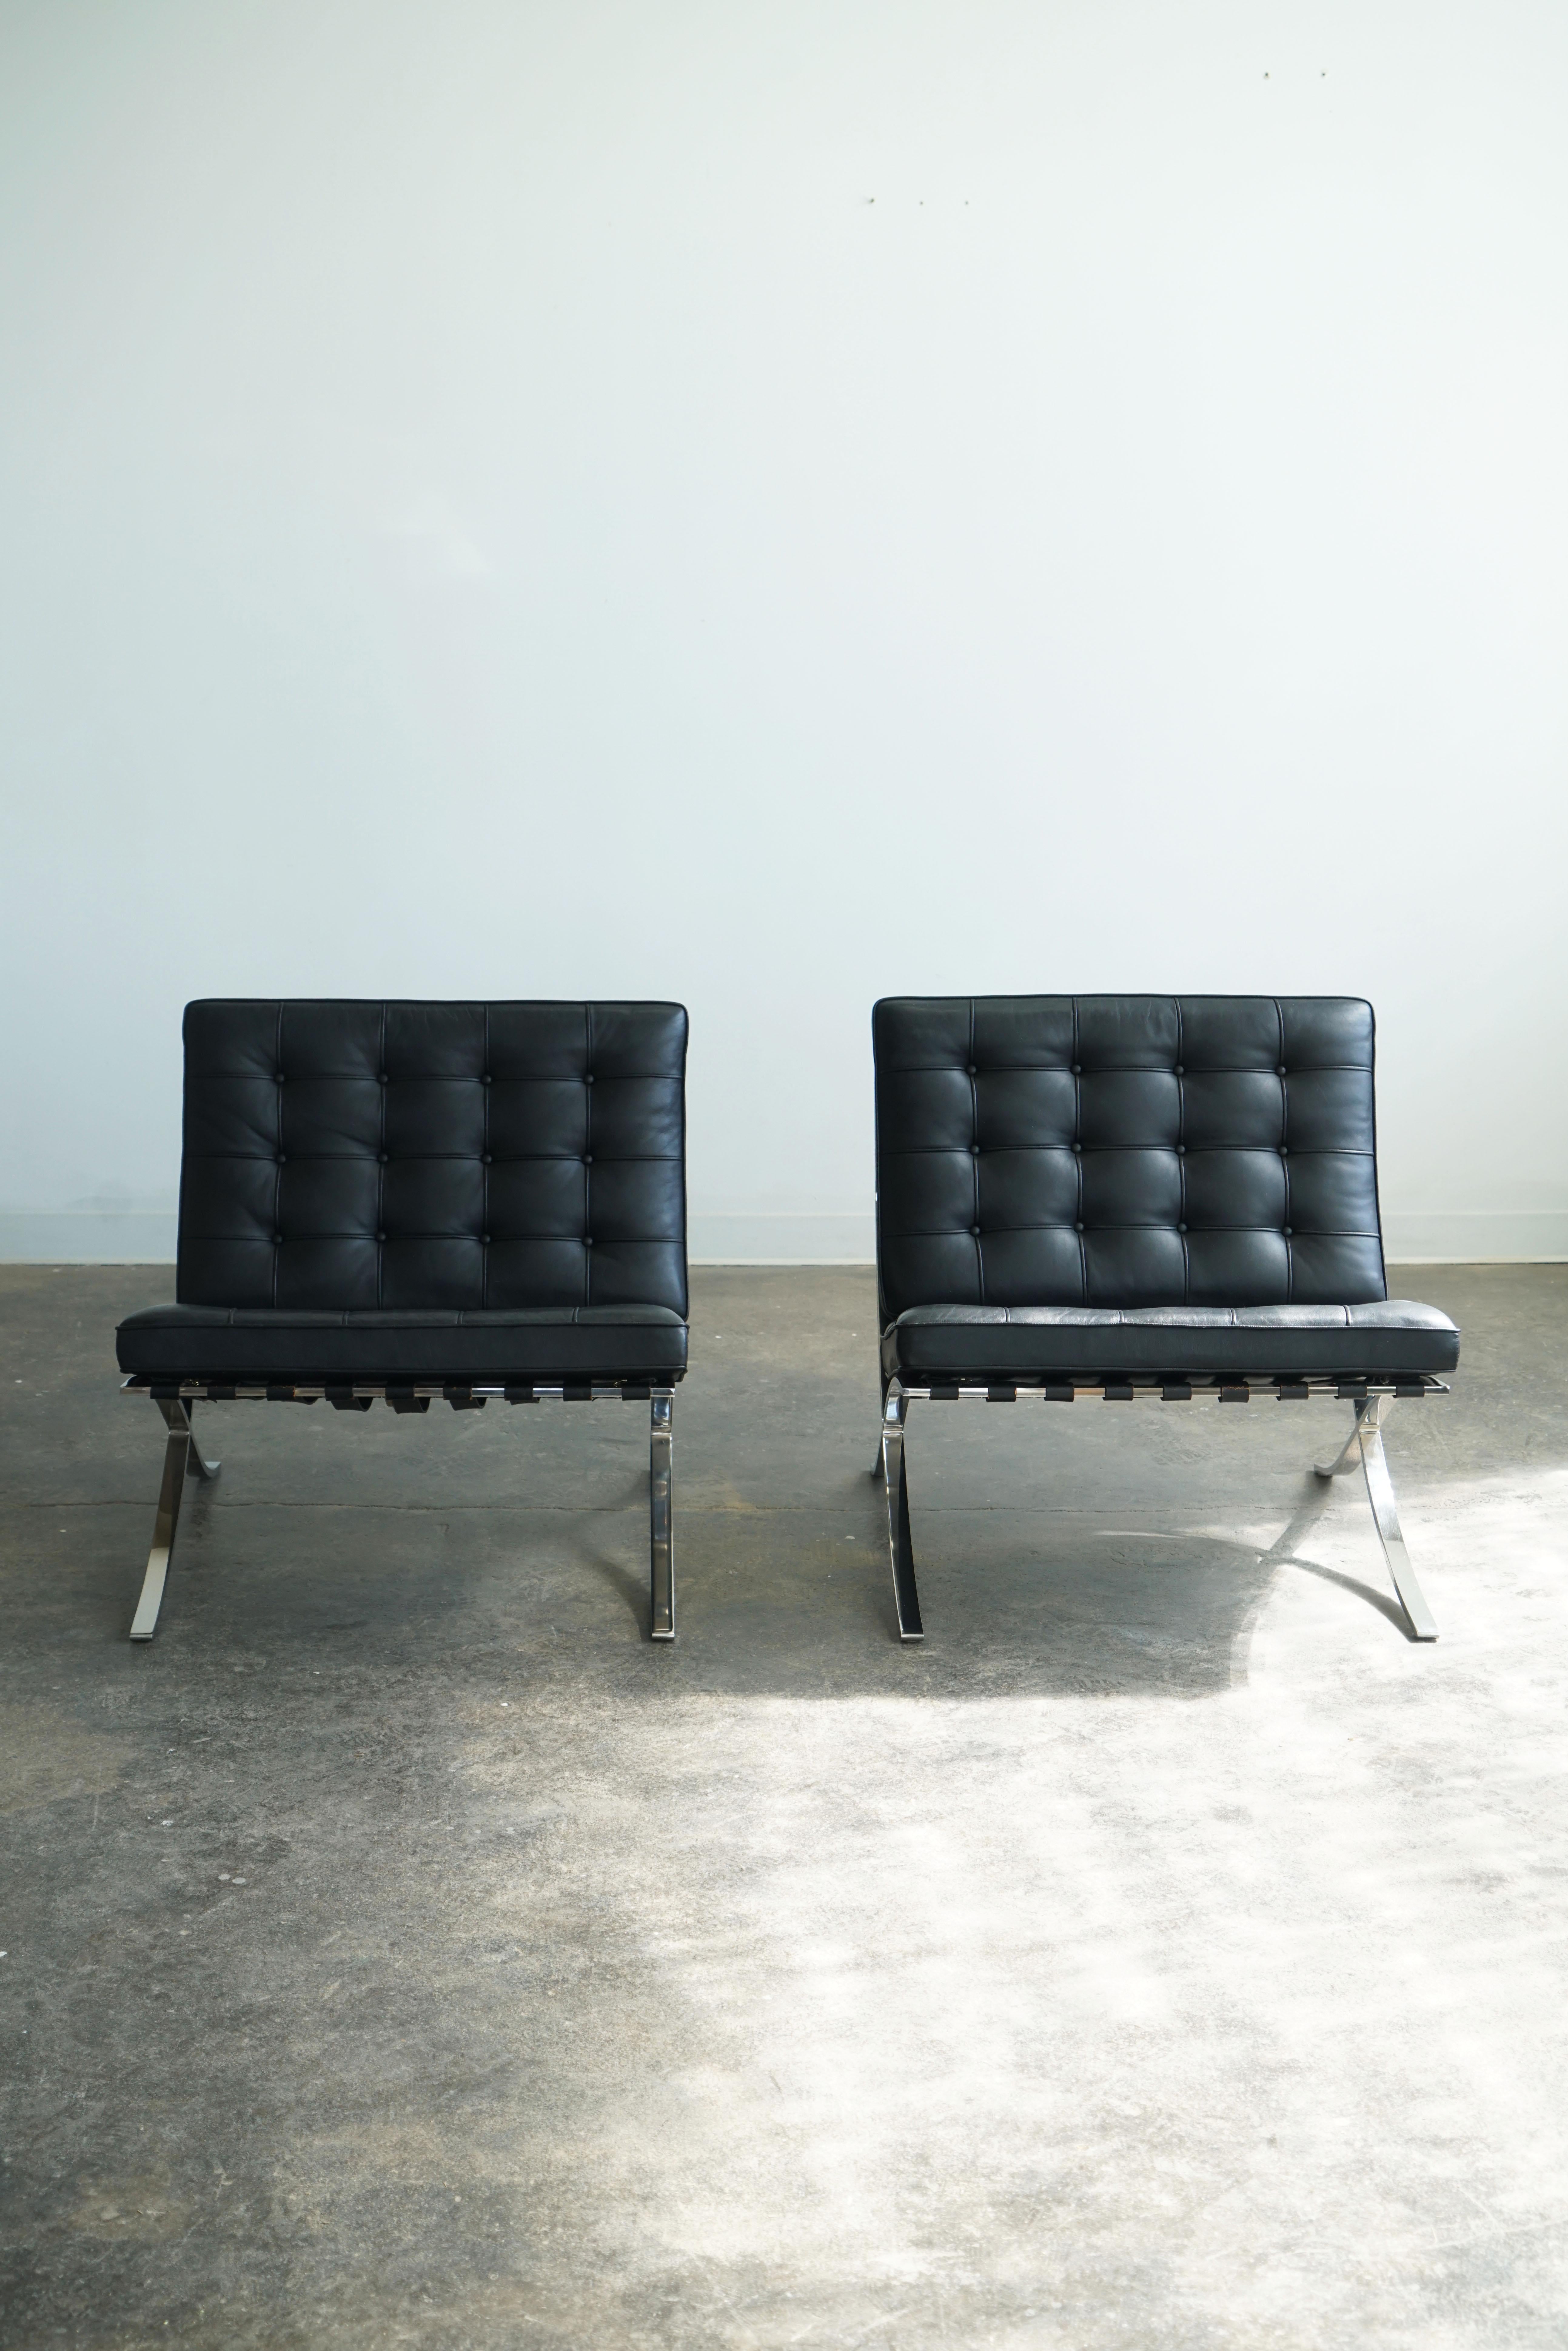 Chaises Barcelona de Knoll, ensemble de 2.
Conçu par Mies van der Rohe, à l'origine en 1929.  
Cuir noir.

Les étiquettes du fabricant Knoll sont datées de 1987 sur le bas des coussins d'assise.

L'une des chaises les plus reconnues du siècle